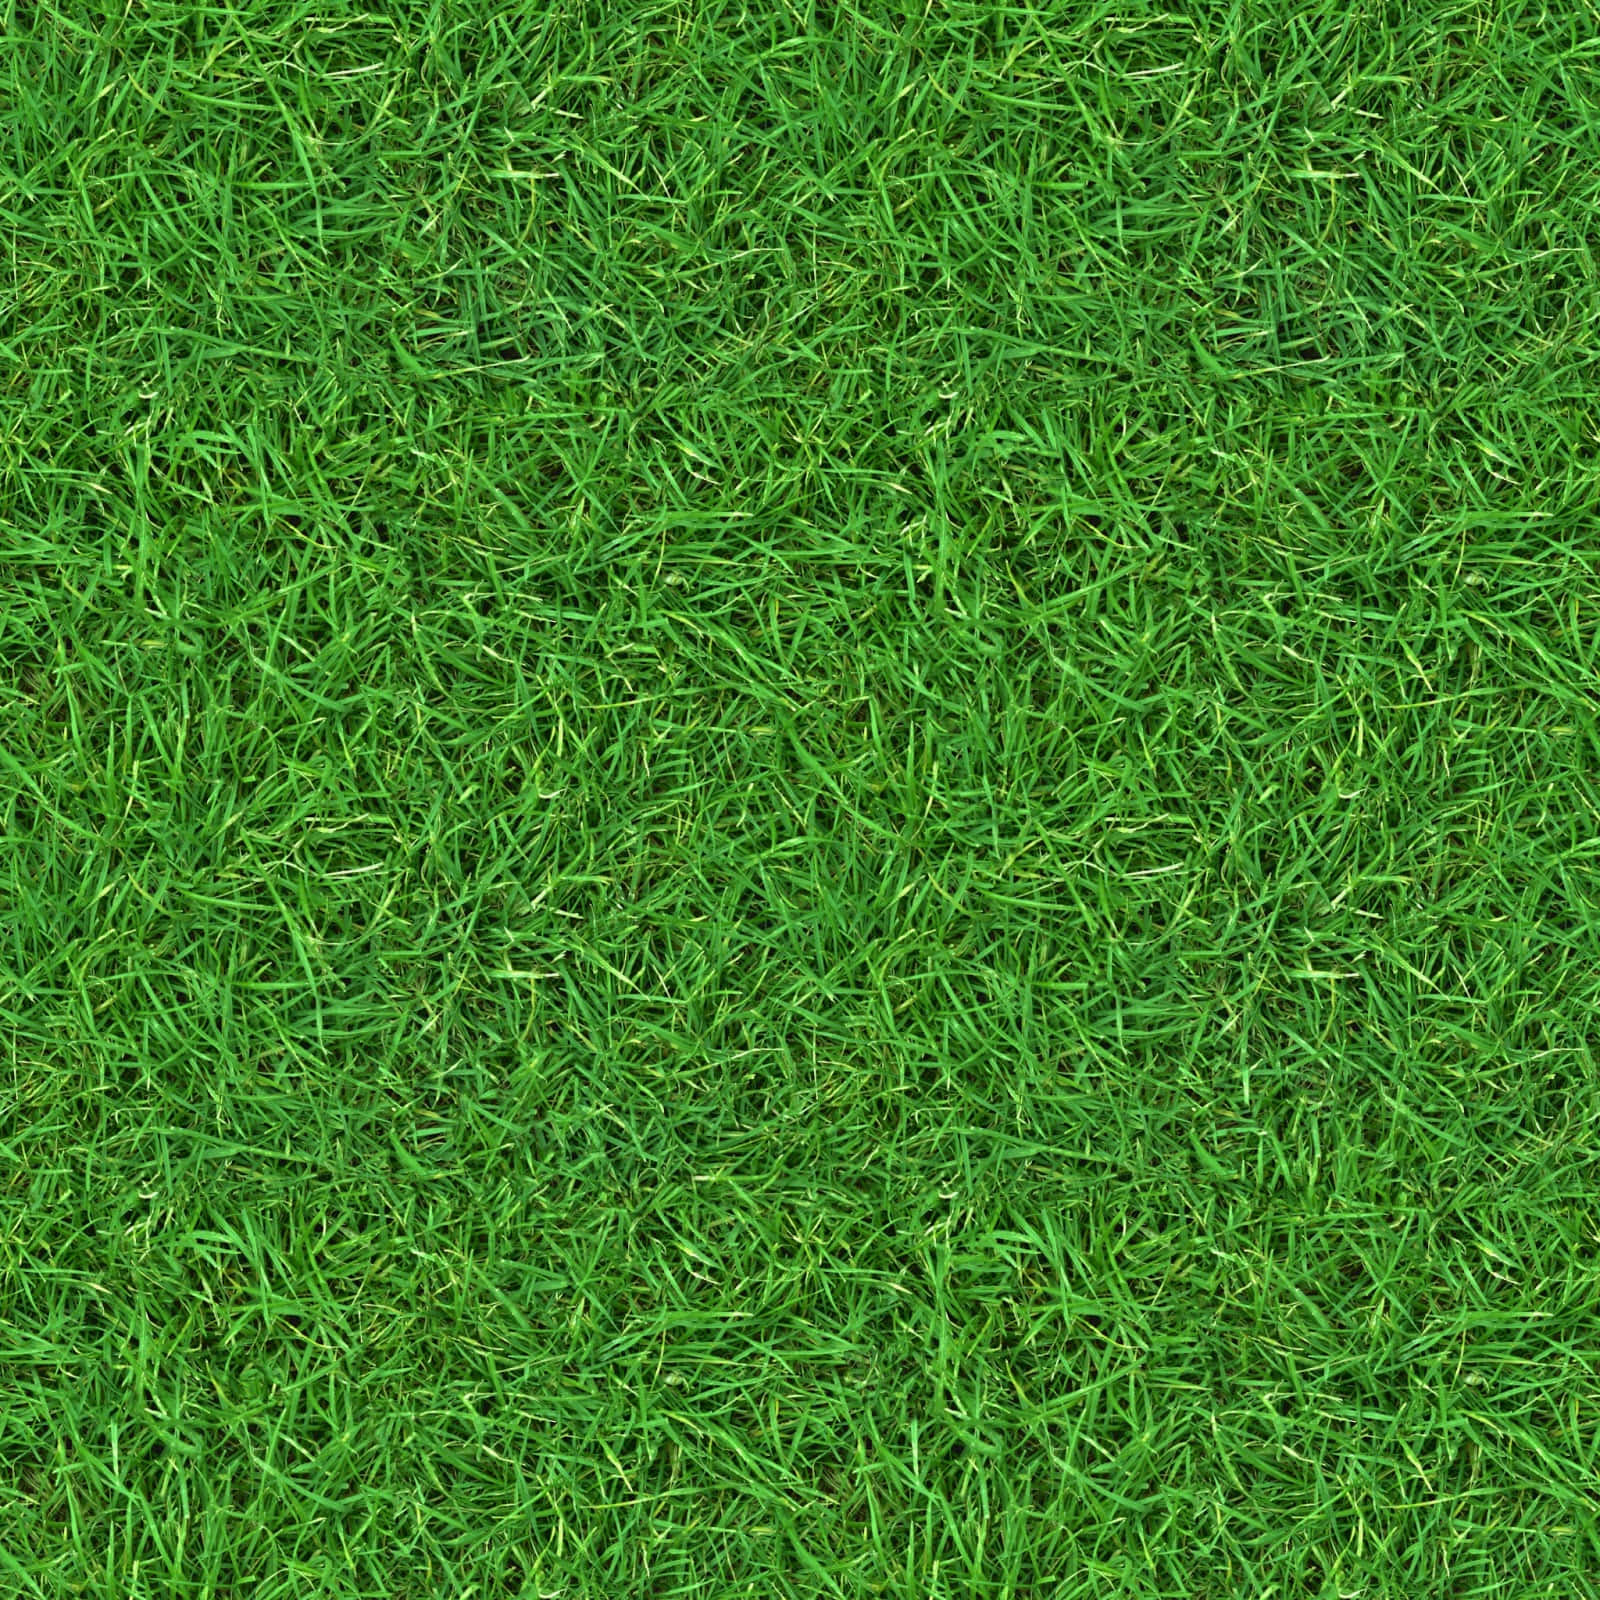 Soft green grass texture